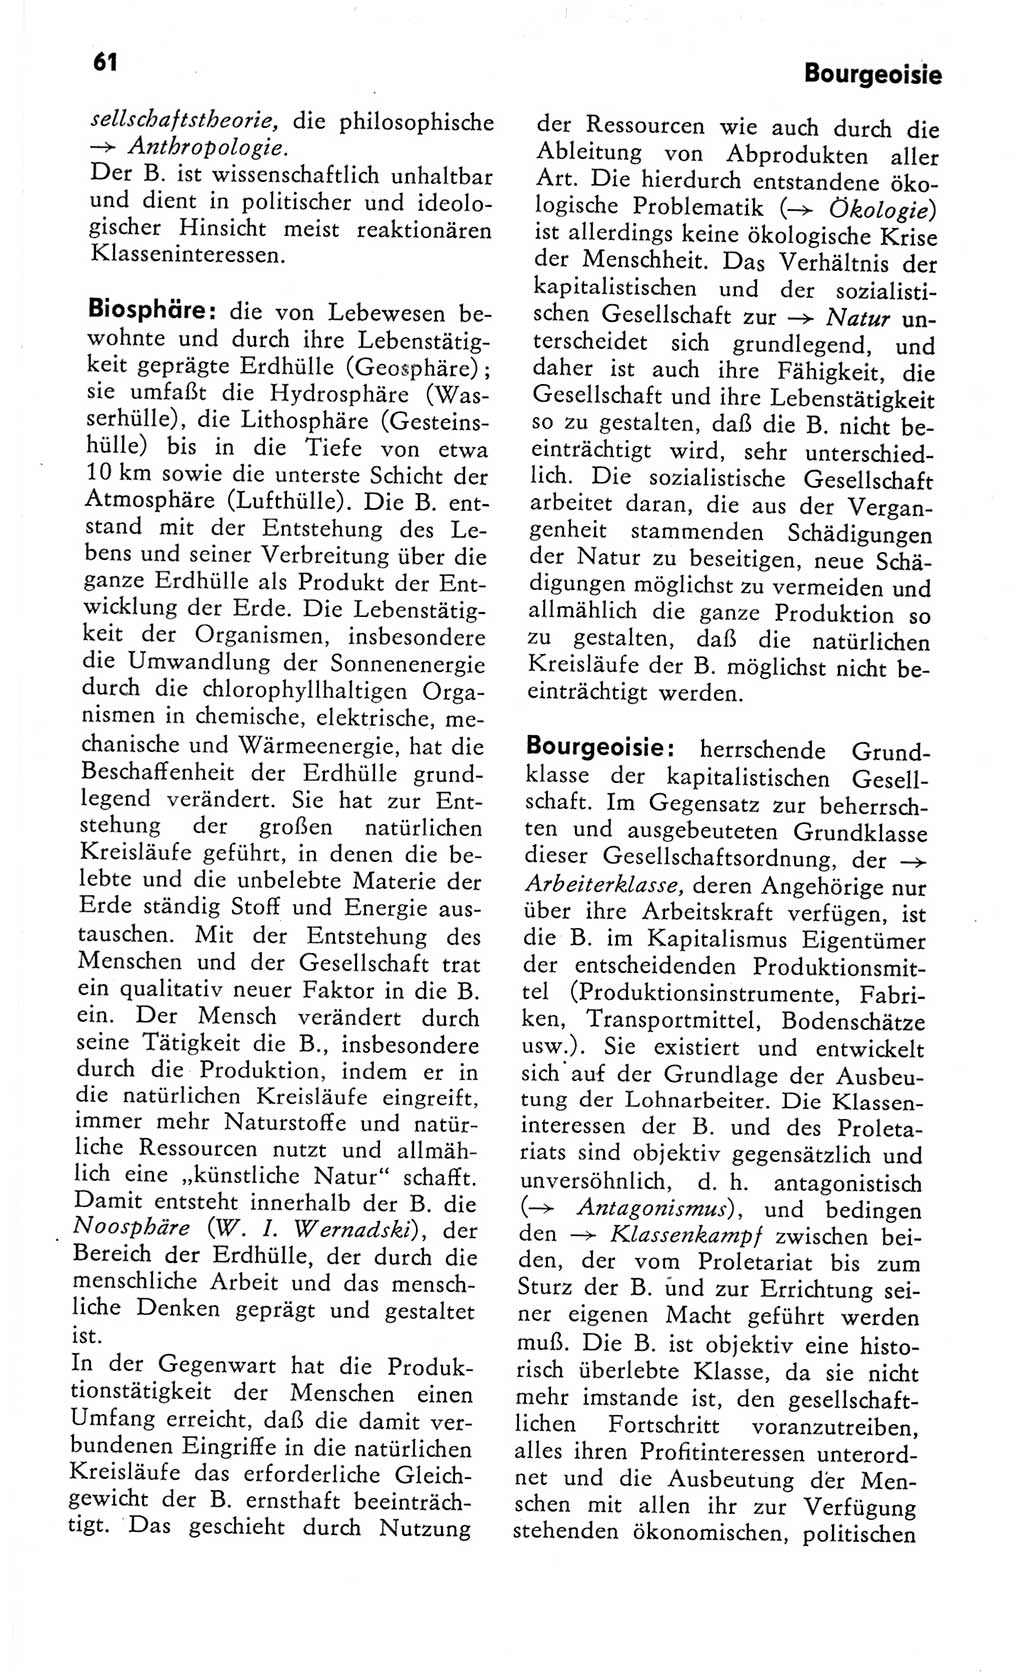 Kleines Wörterbuch der marxistisch-leninistischen Philosophie [Deutsche Demokratische Republik (DDR)] 1982, Seite 61 (Kl. Wb. ML Phil. DDR 1982, S. 61)